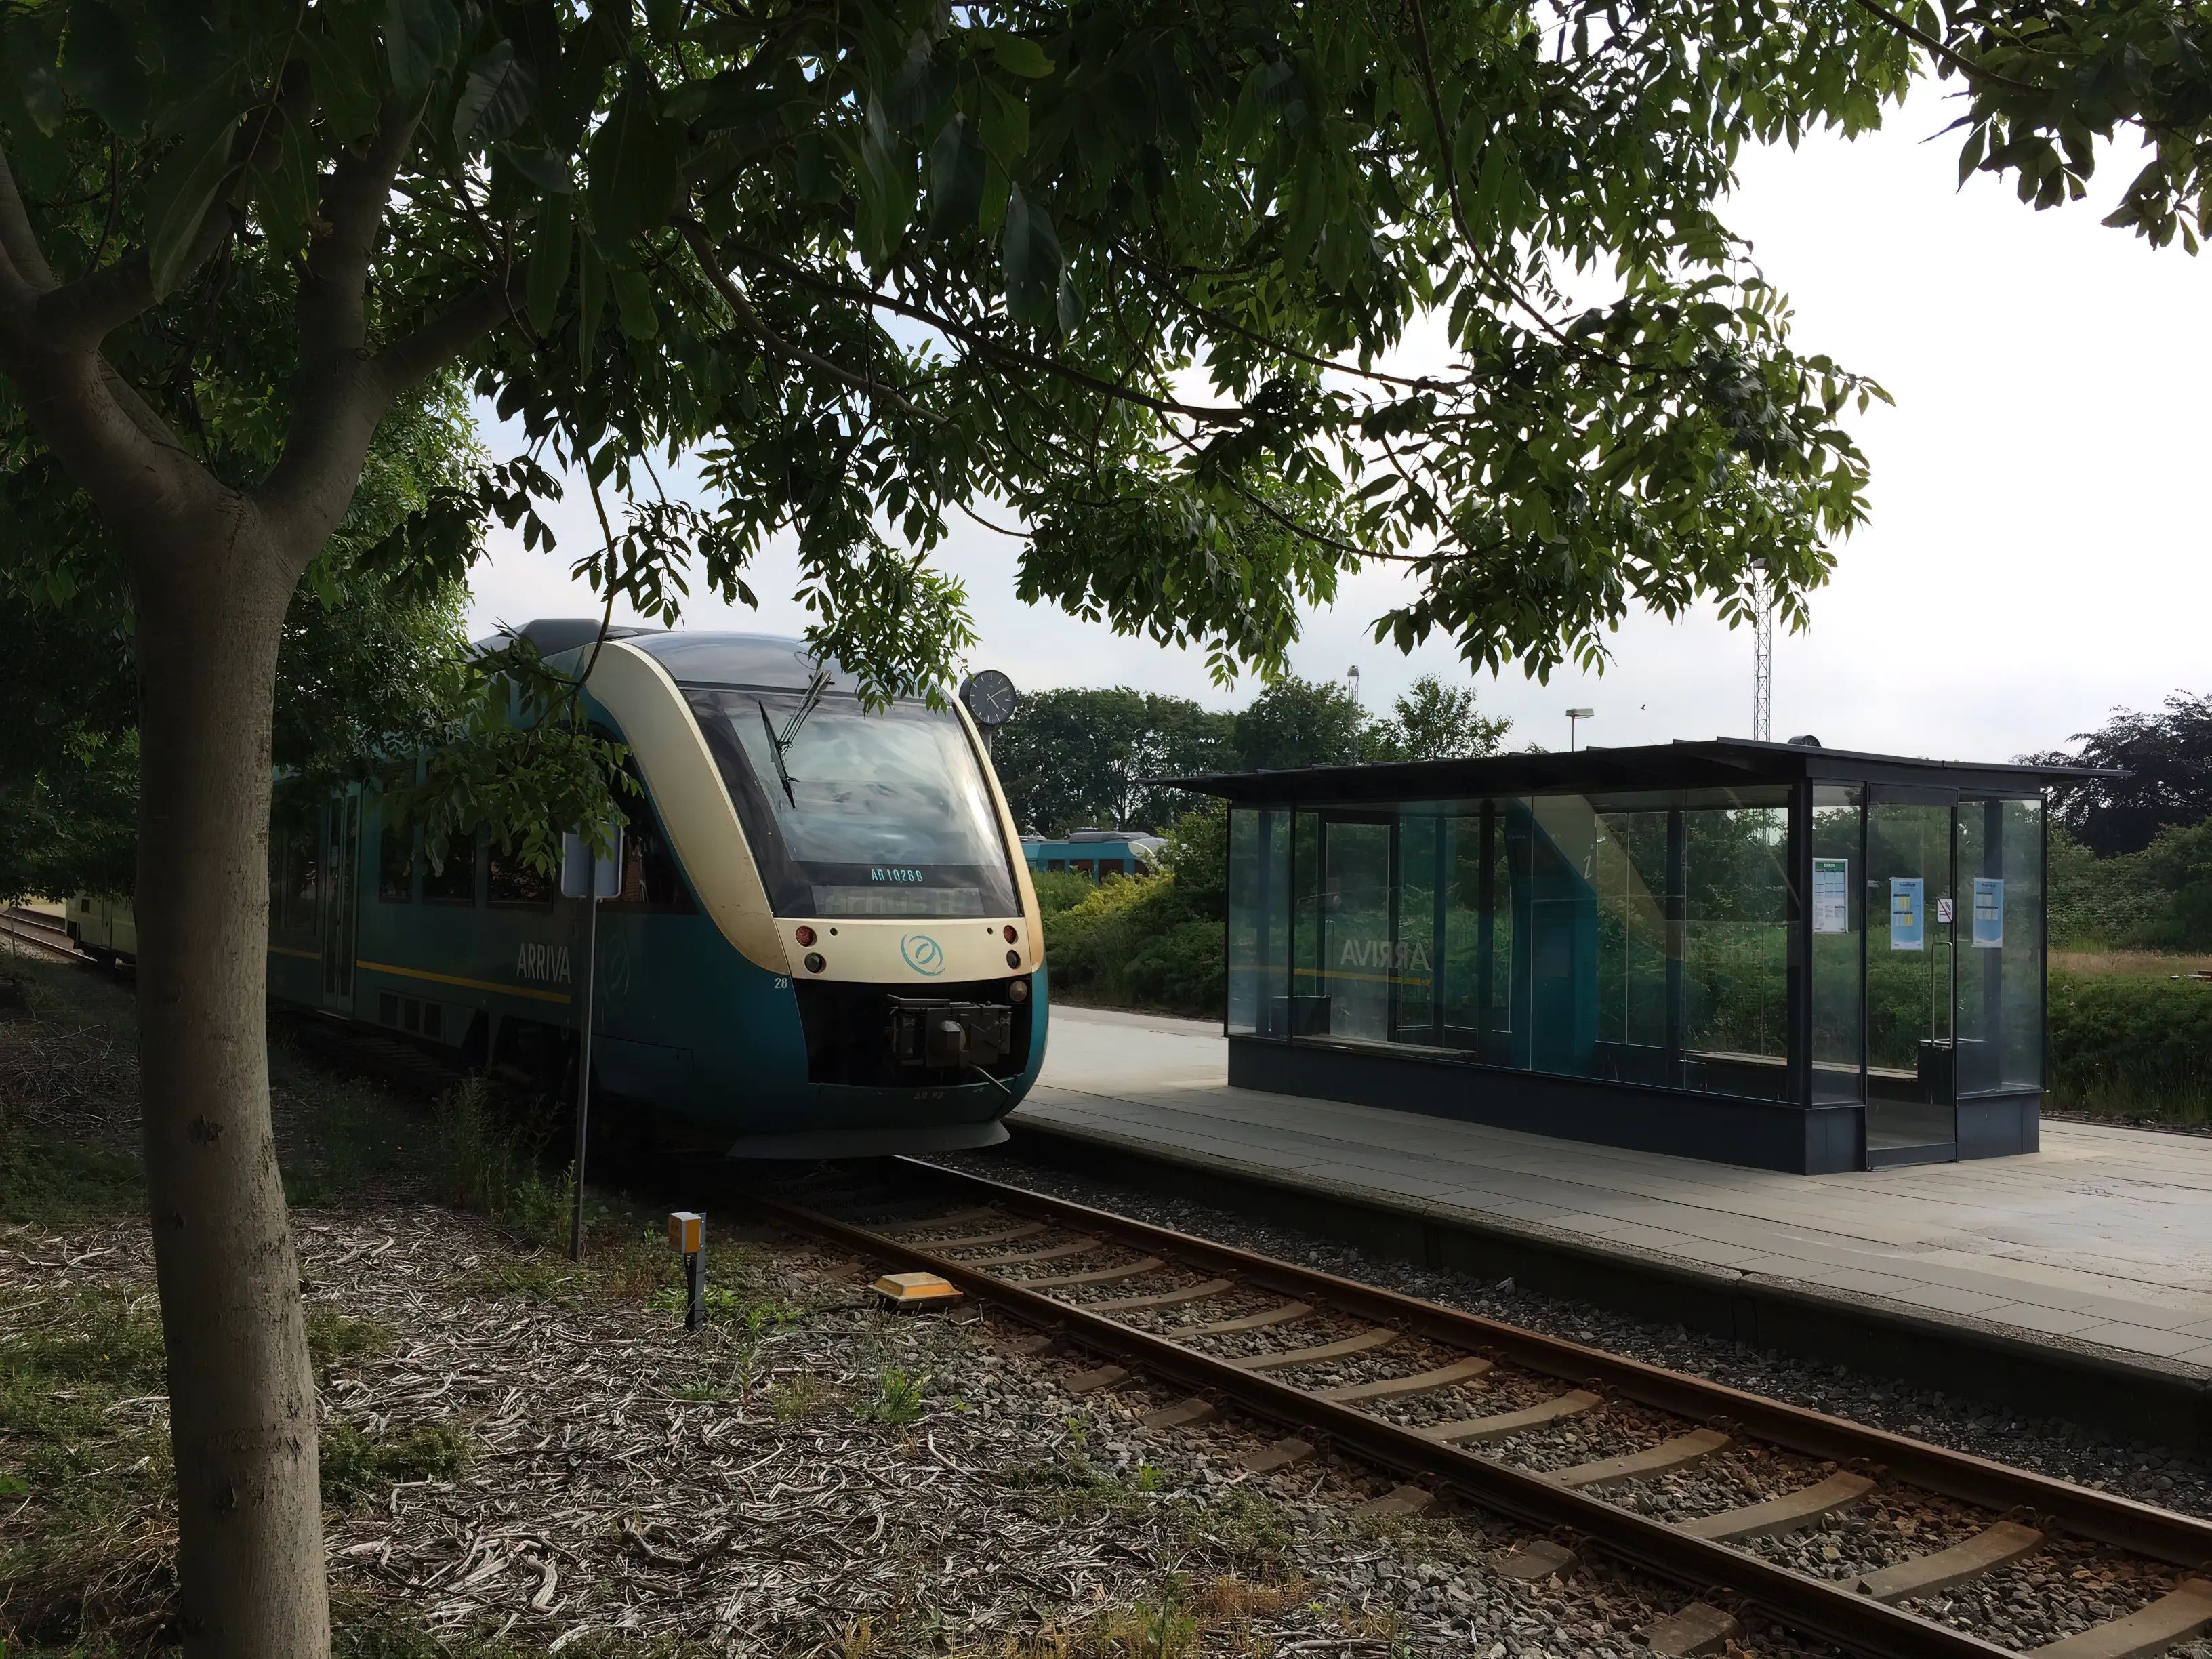 Billede af tog ud for Skjern Station.